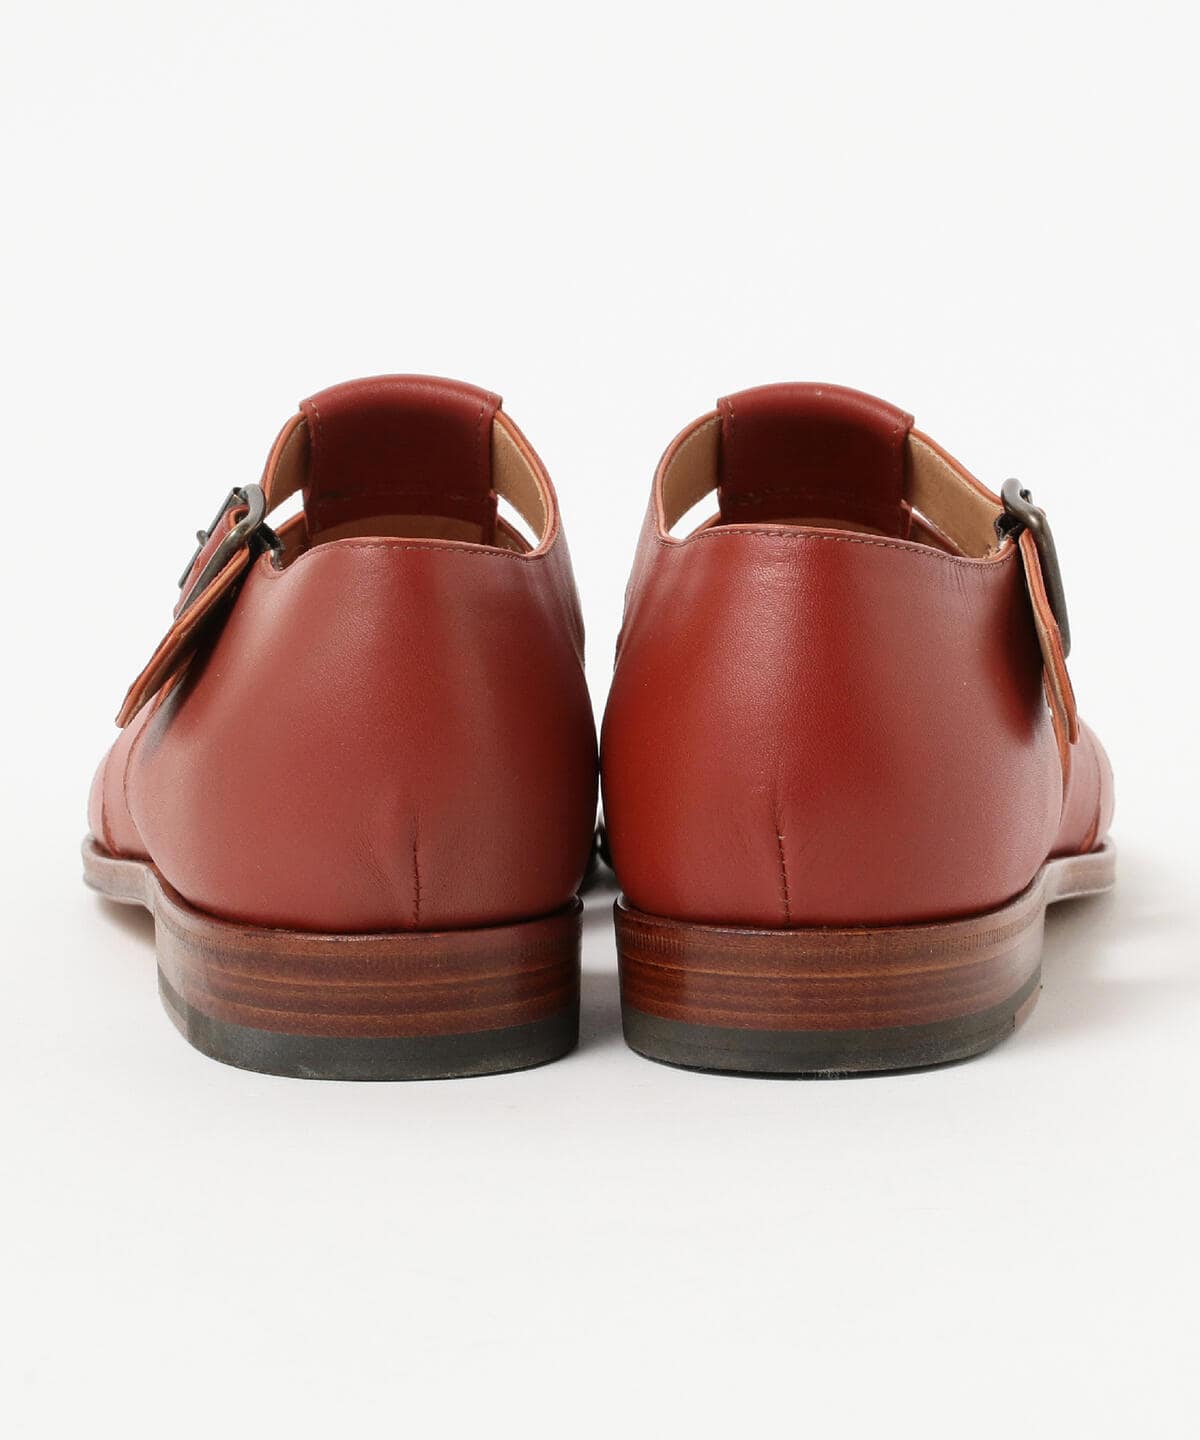 ドレス/ビジネス定価2万 InternationalGallery BEAMS イタリア製本革靴